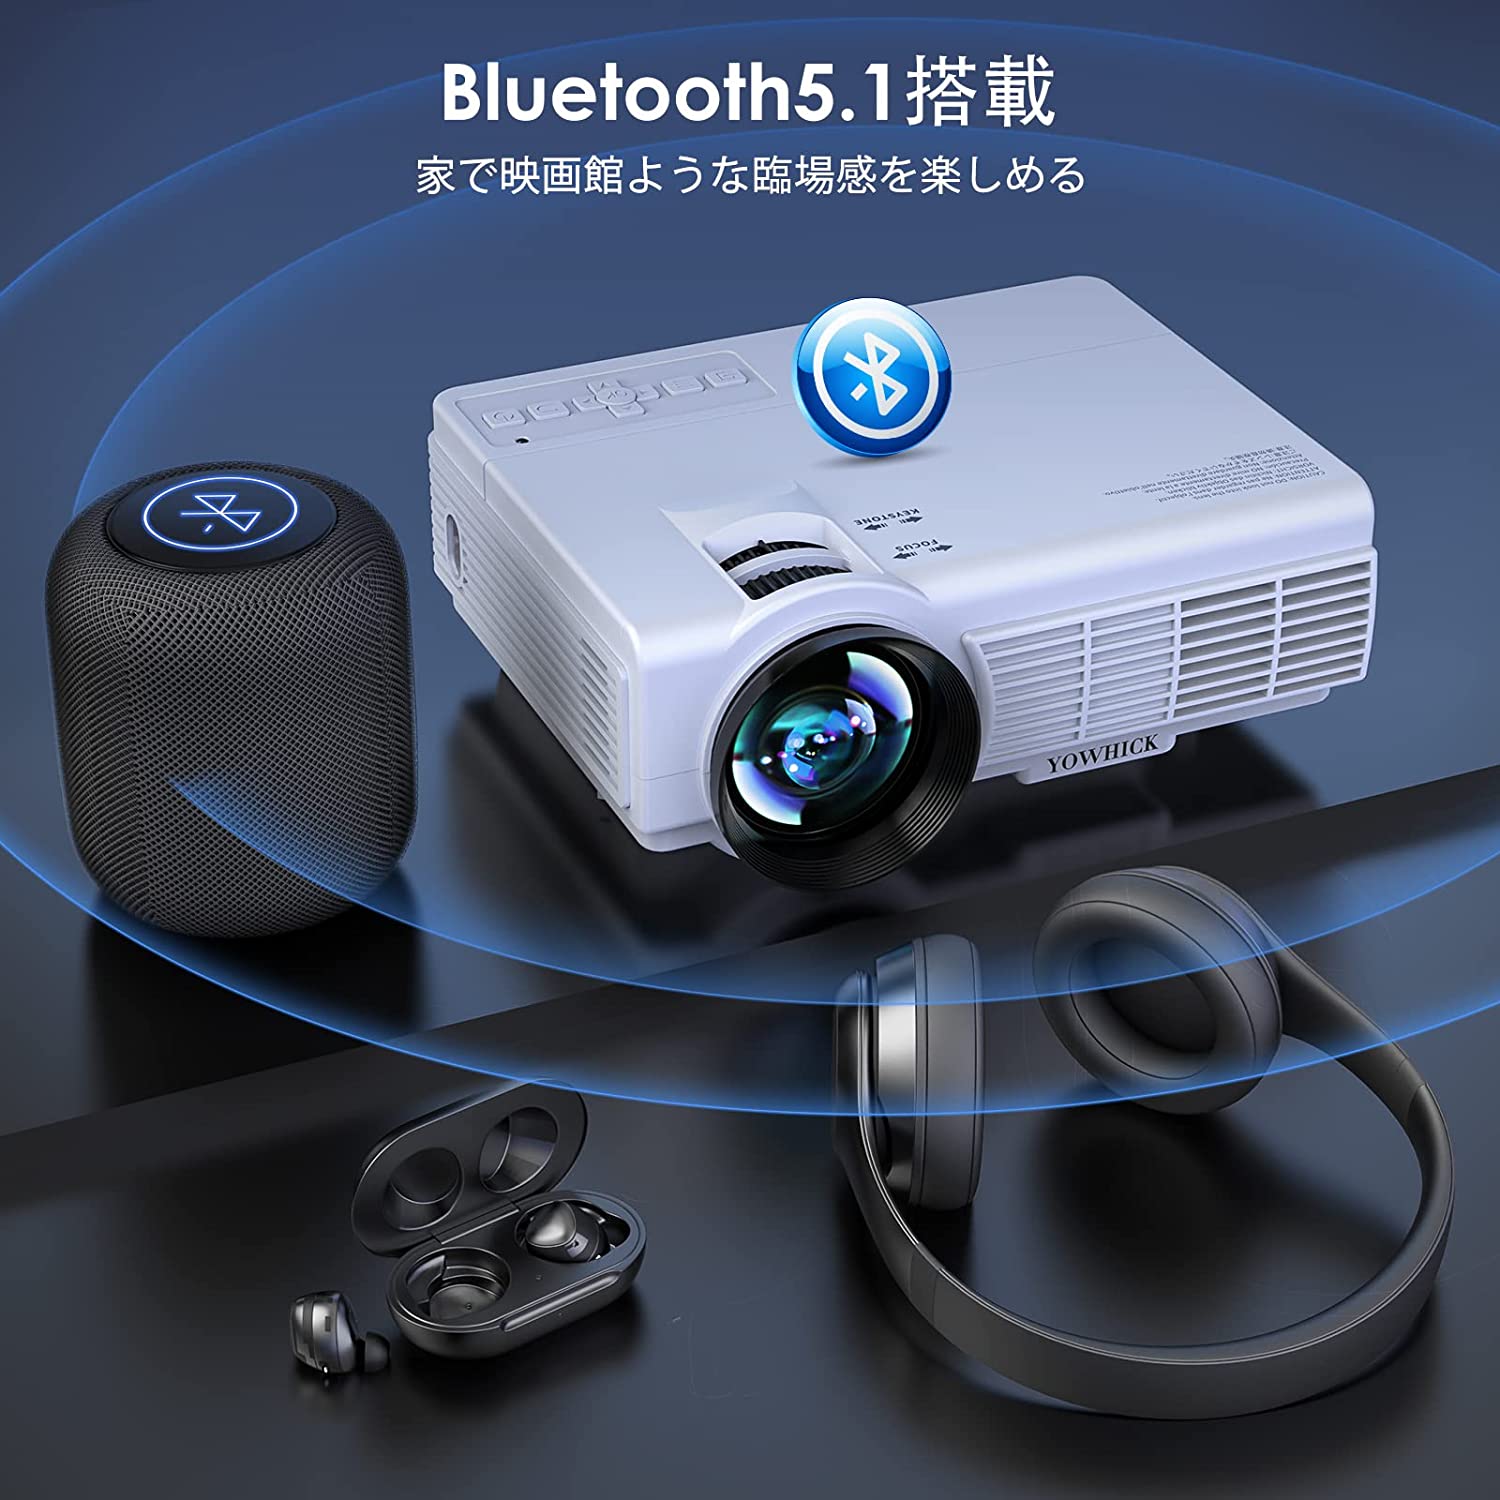 5GWiFi&Bluetooth5.1対応】 プロジェクター 小型 ホームプロジェクター